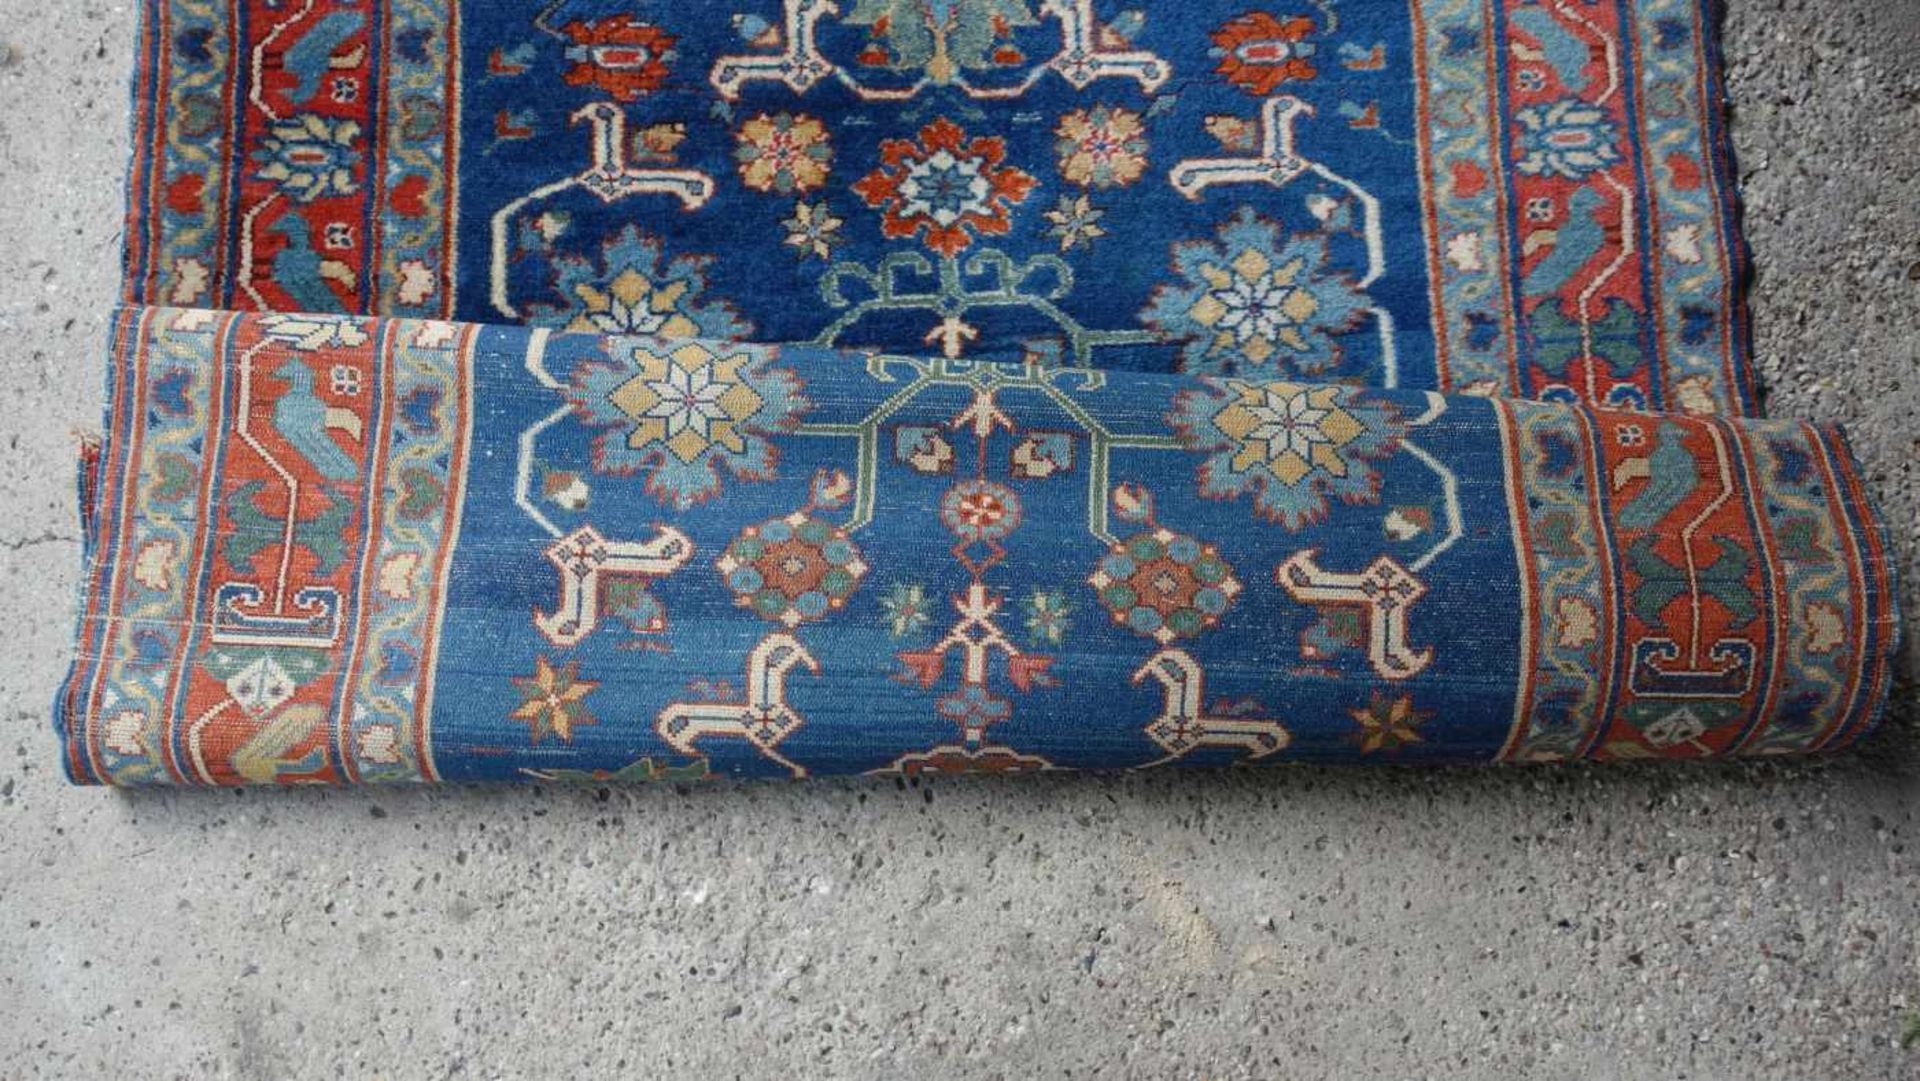 SCHIRVAN TEPPICH (SCHIRWAN) / shirvan rug, Kaukasus. Feiner Teppich mit dichtem Flor; - Image 7 of 8